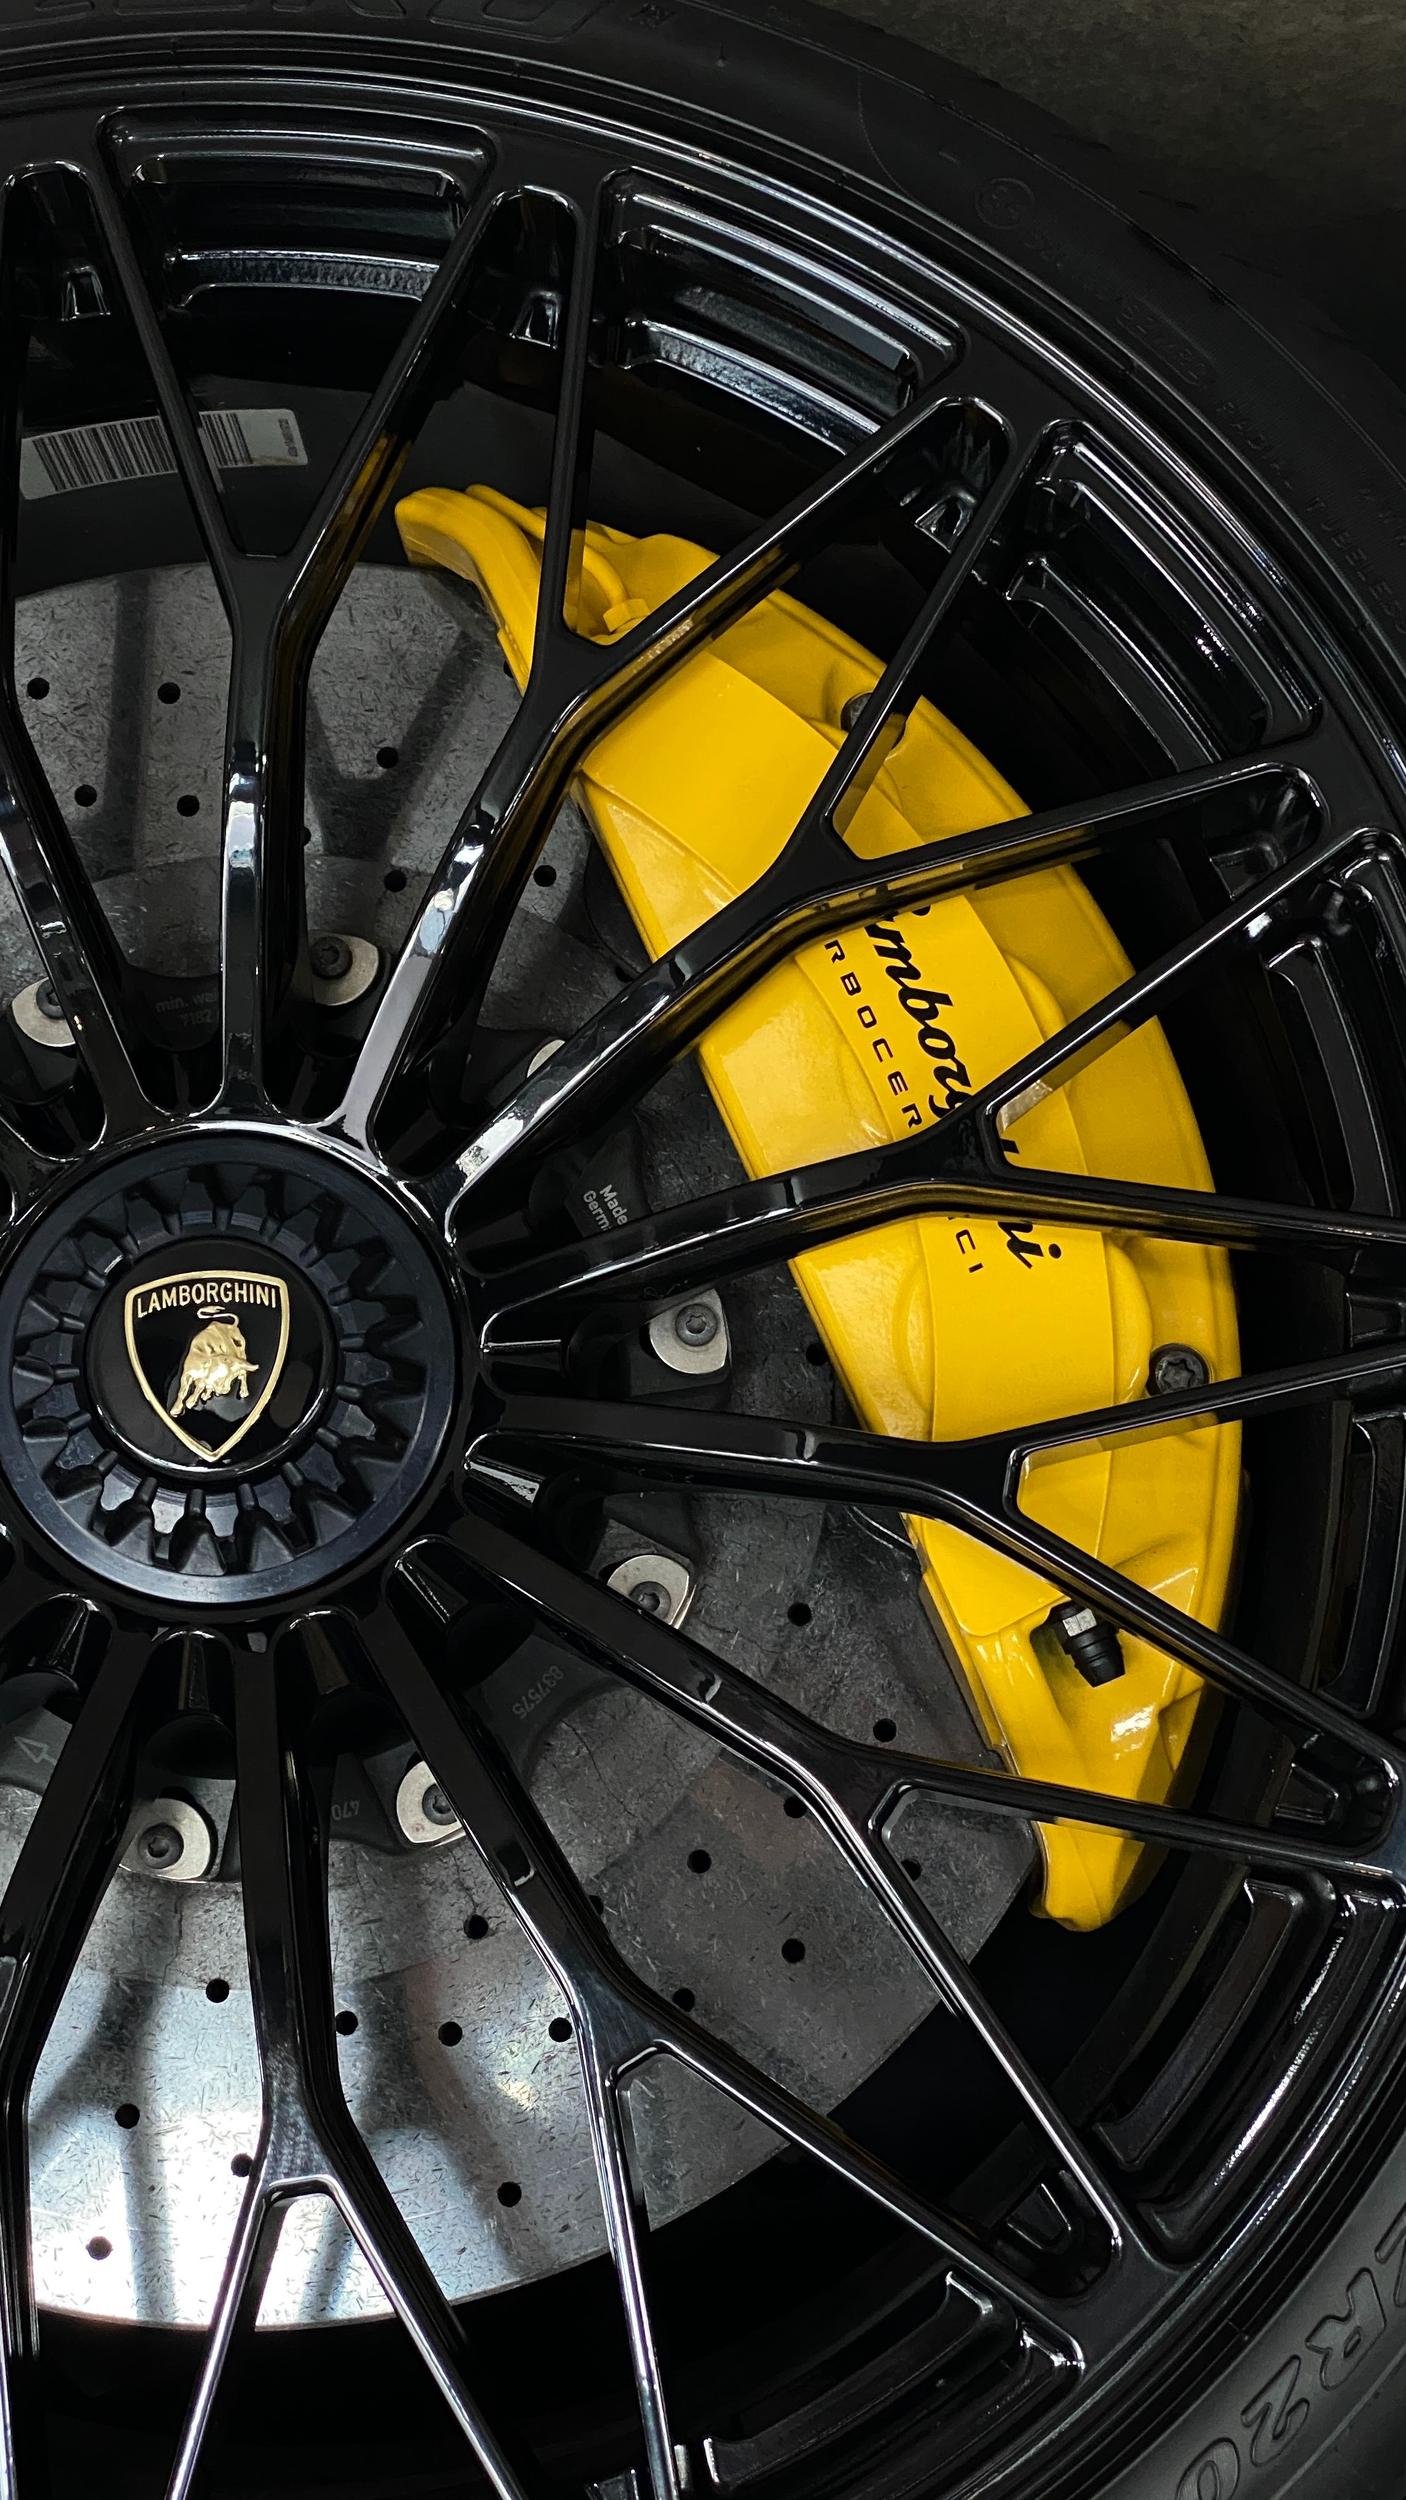 Lamborghini tire sizes